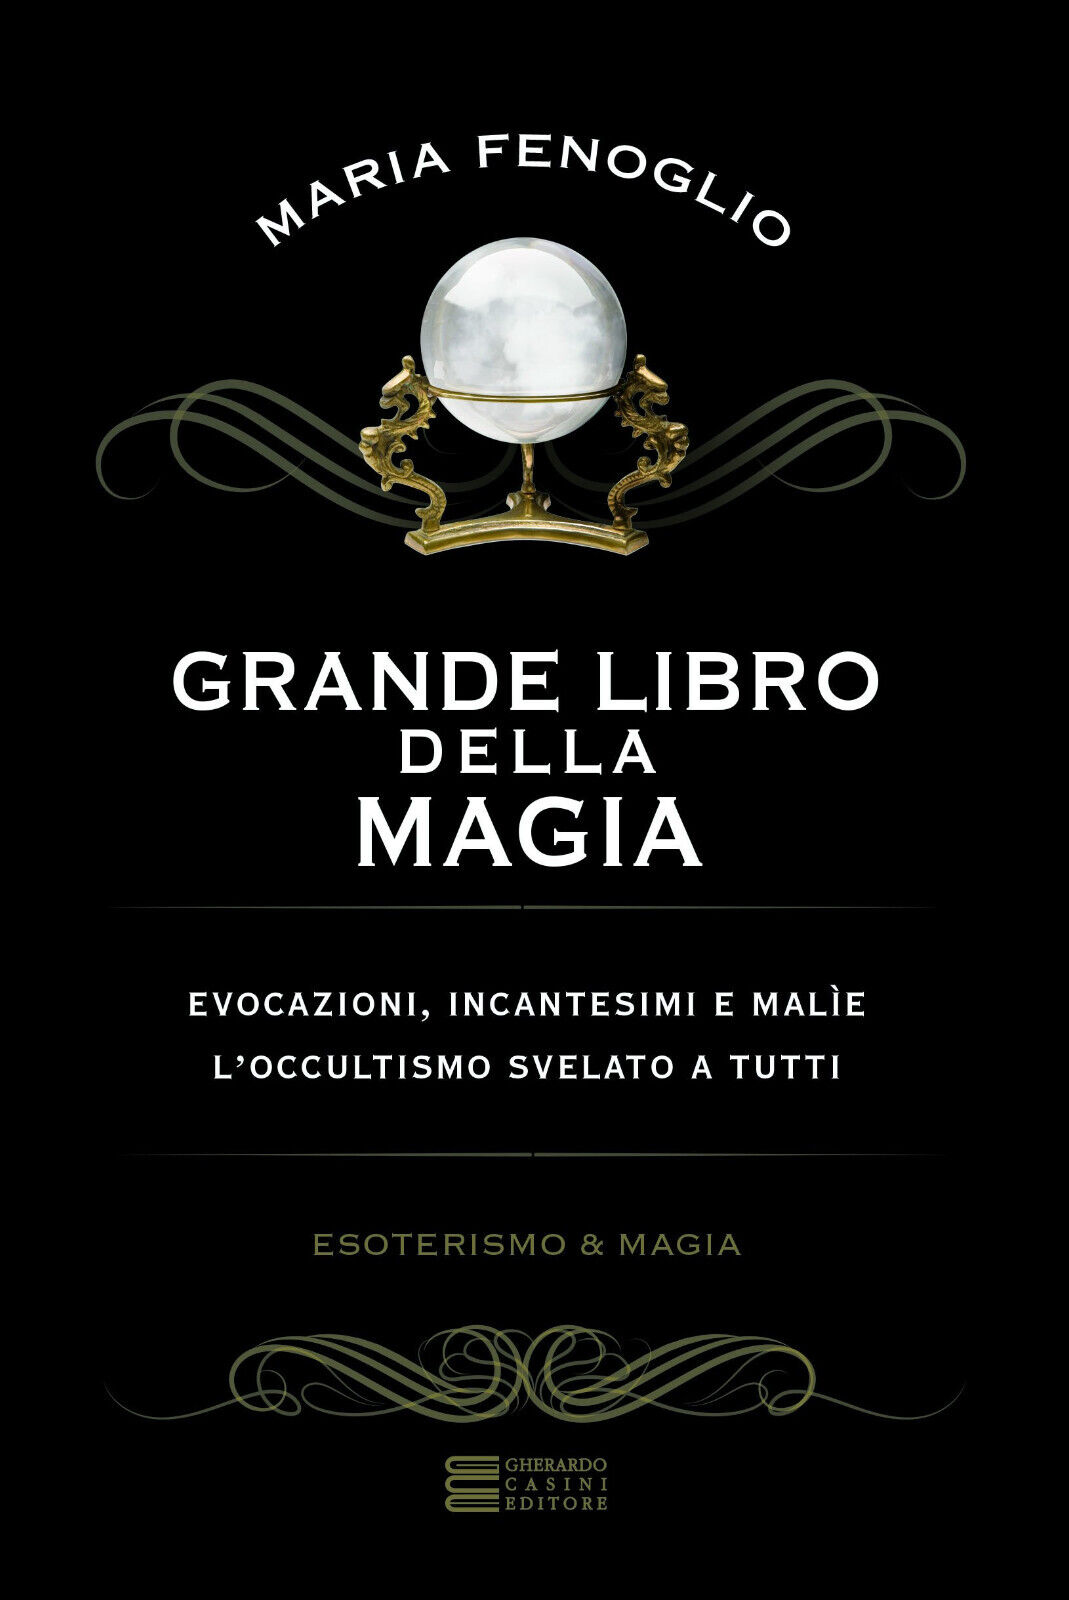 Grande libro della magia - Maria Fenoglio - Gherardo Casini, 2017